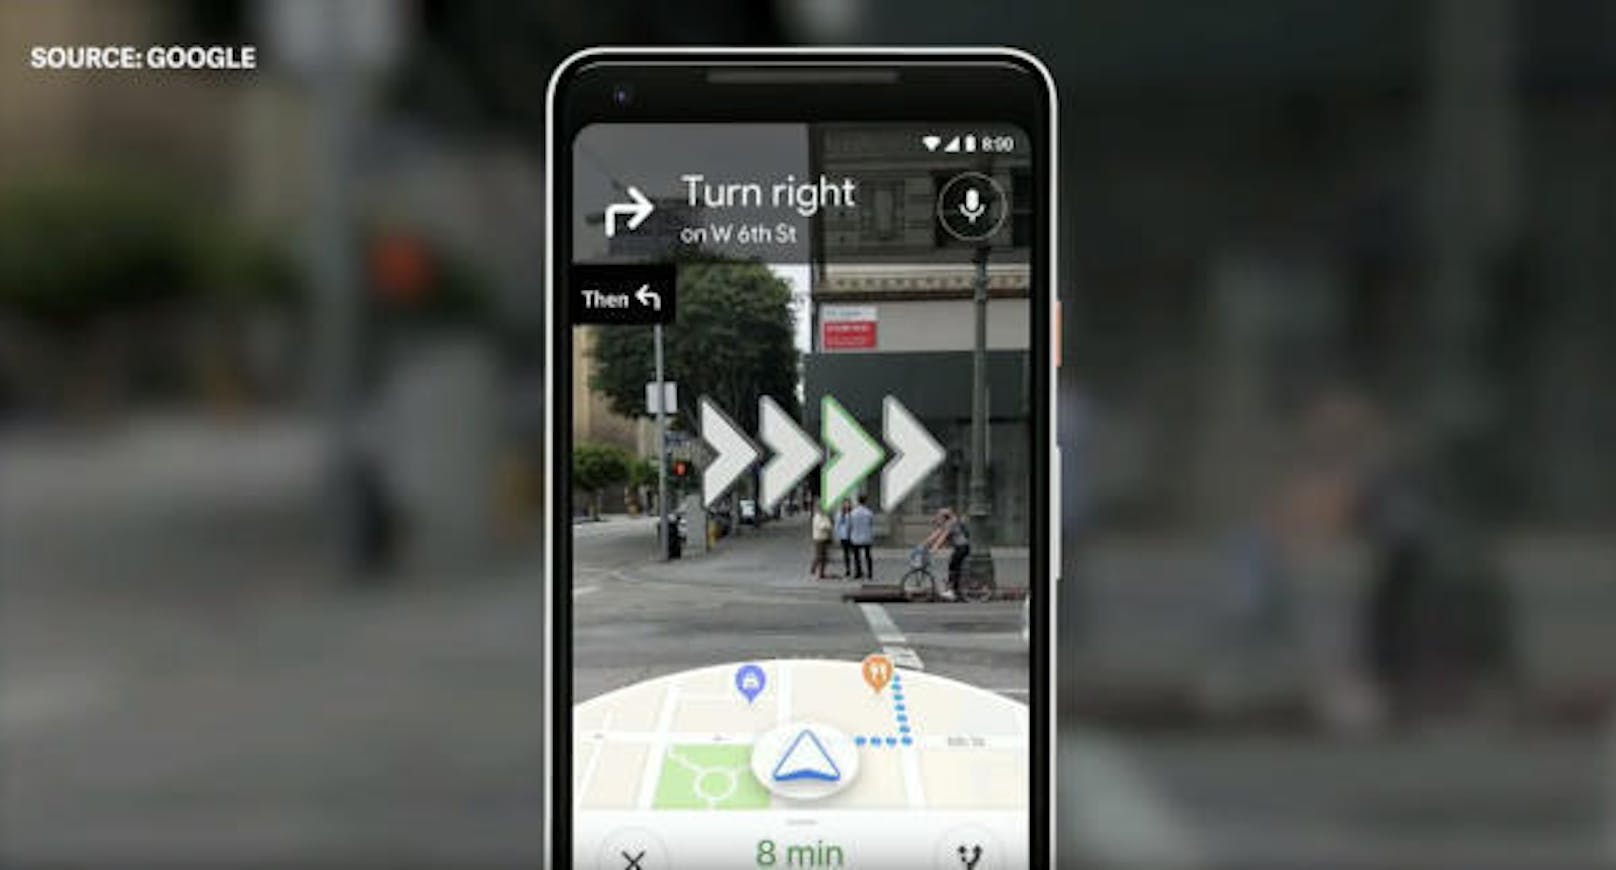 Augmented-Reality trifft auf Google Maps: So soll es einfacher werden, Adressen noch schneller zu finden, da man so nicht Gefahr läuft, zuerst in eine falsche Richtung zu gehen.